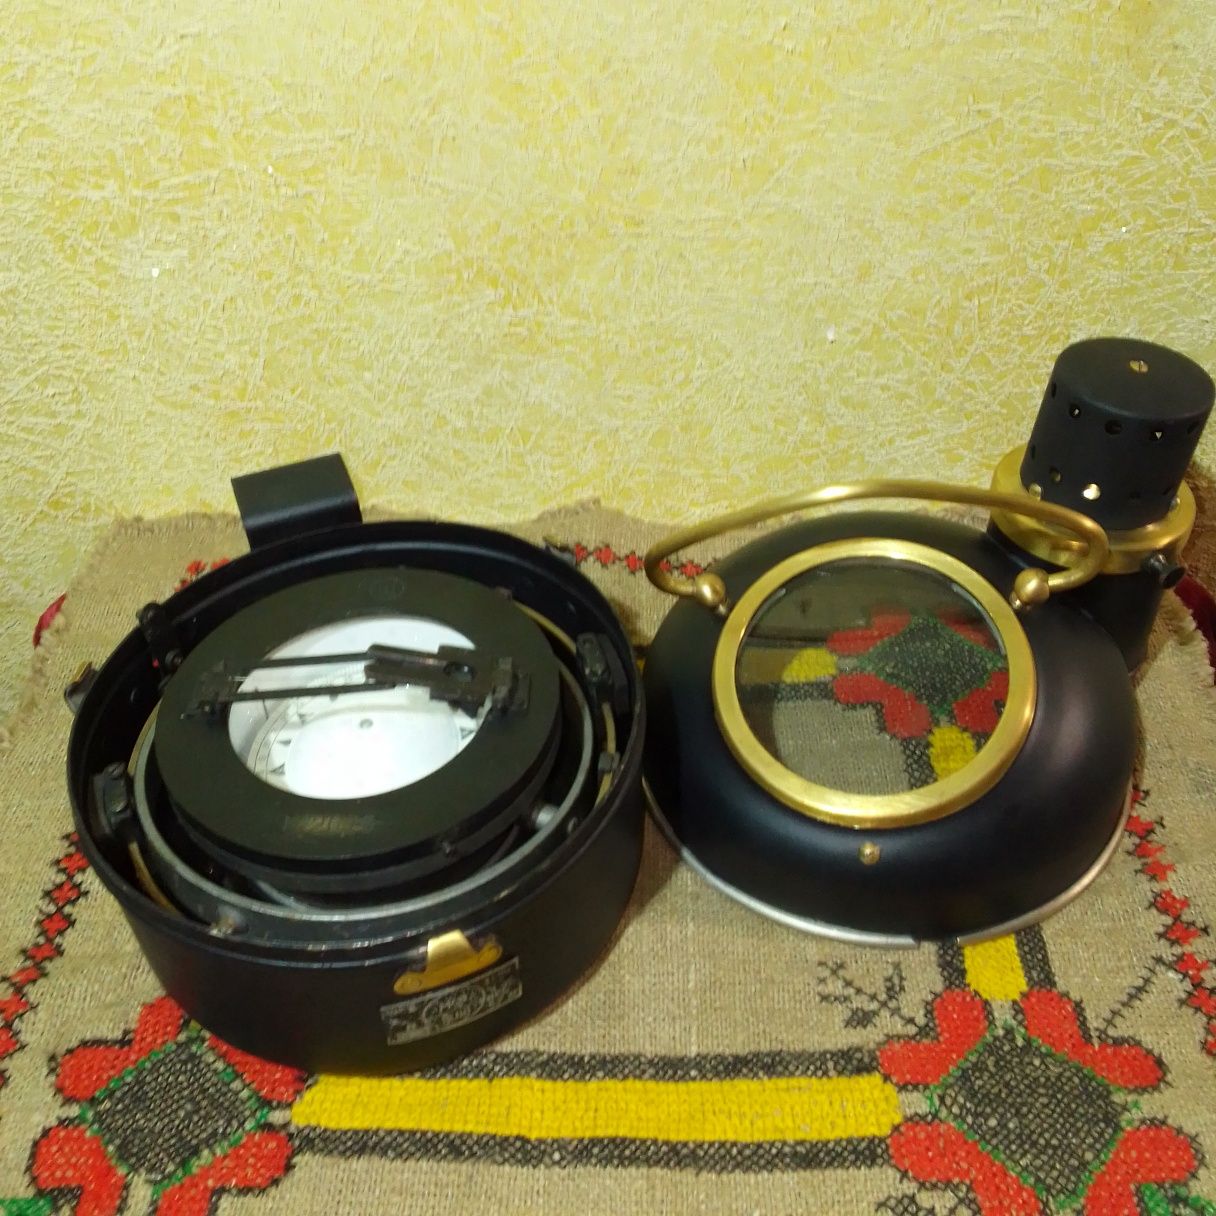 Морський шлюпковмй КТ-М1м компас часів СРСР.